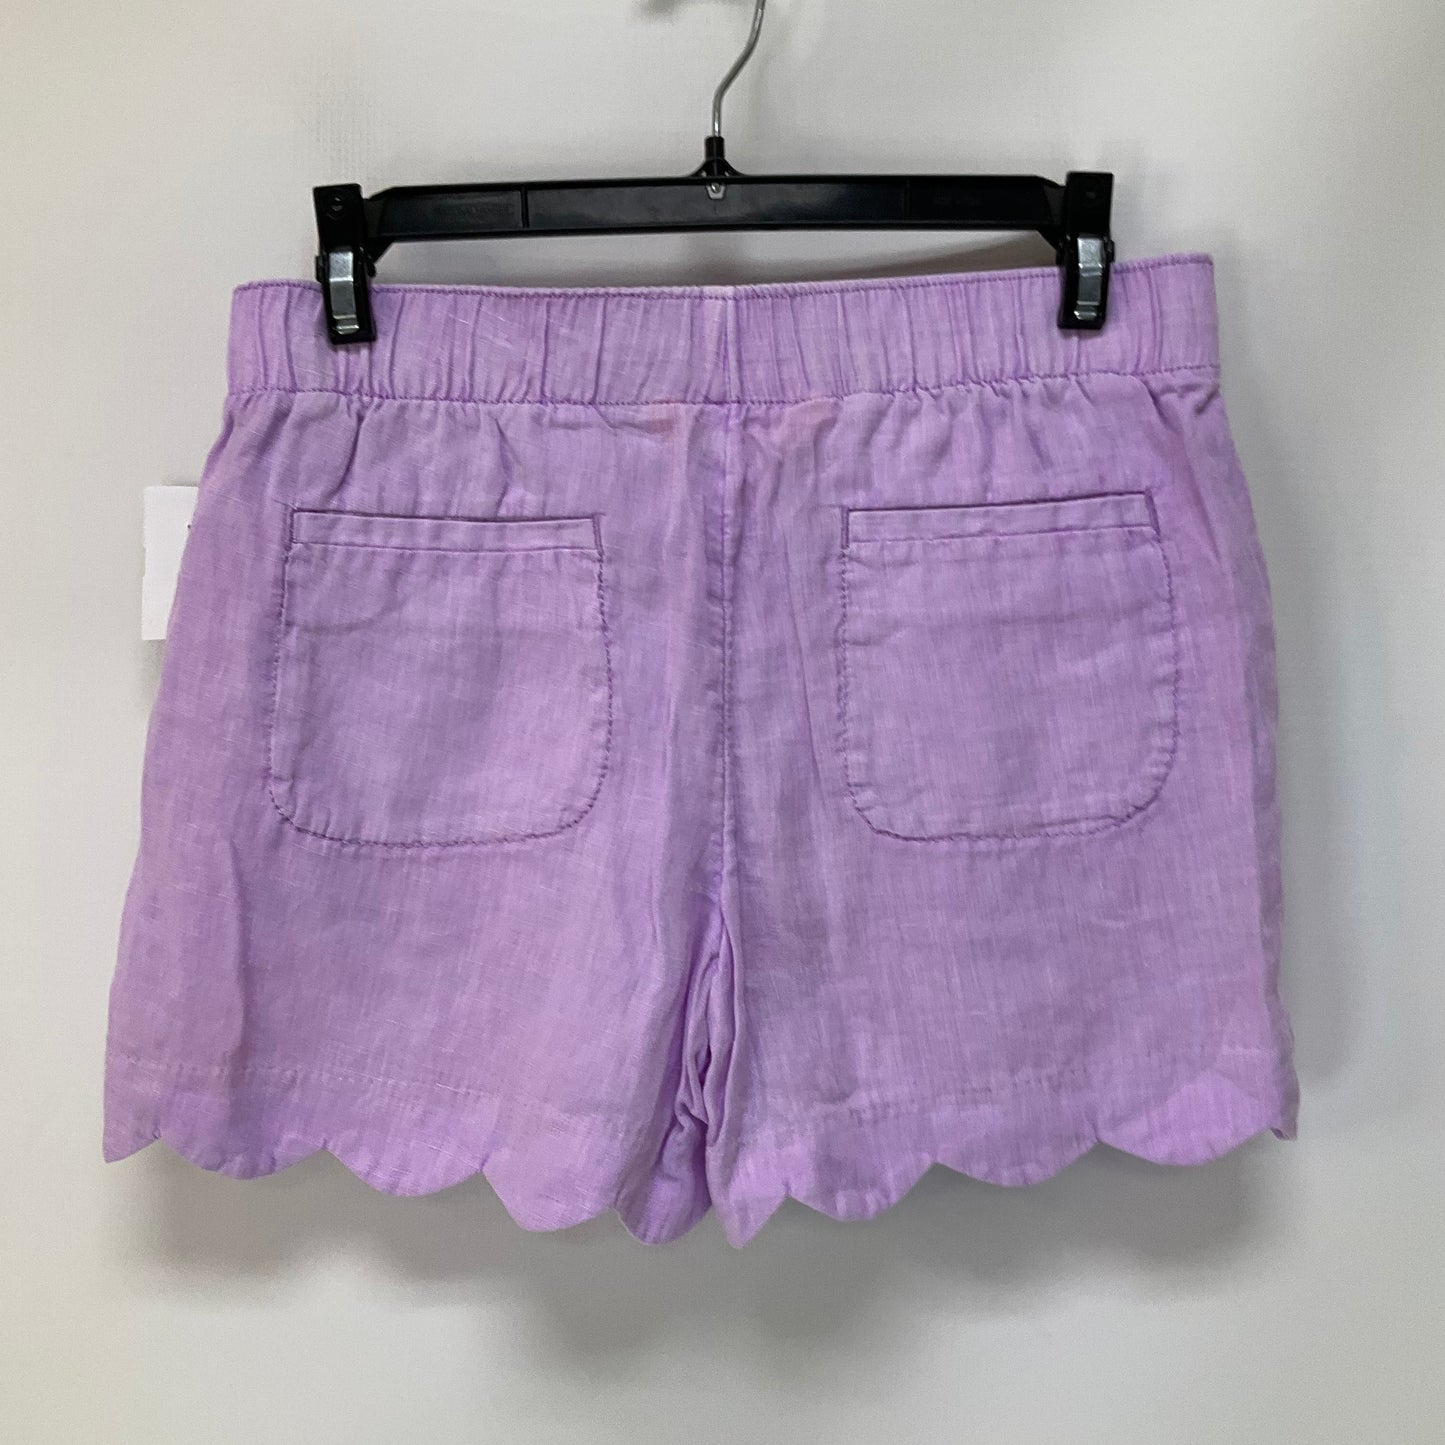 Purple Shorts Lilly Pulitzer, Size Xs